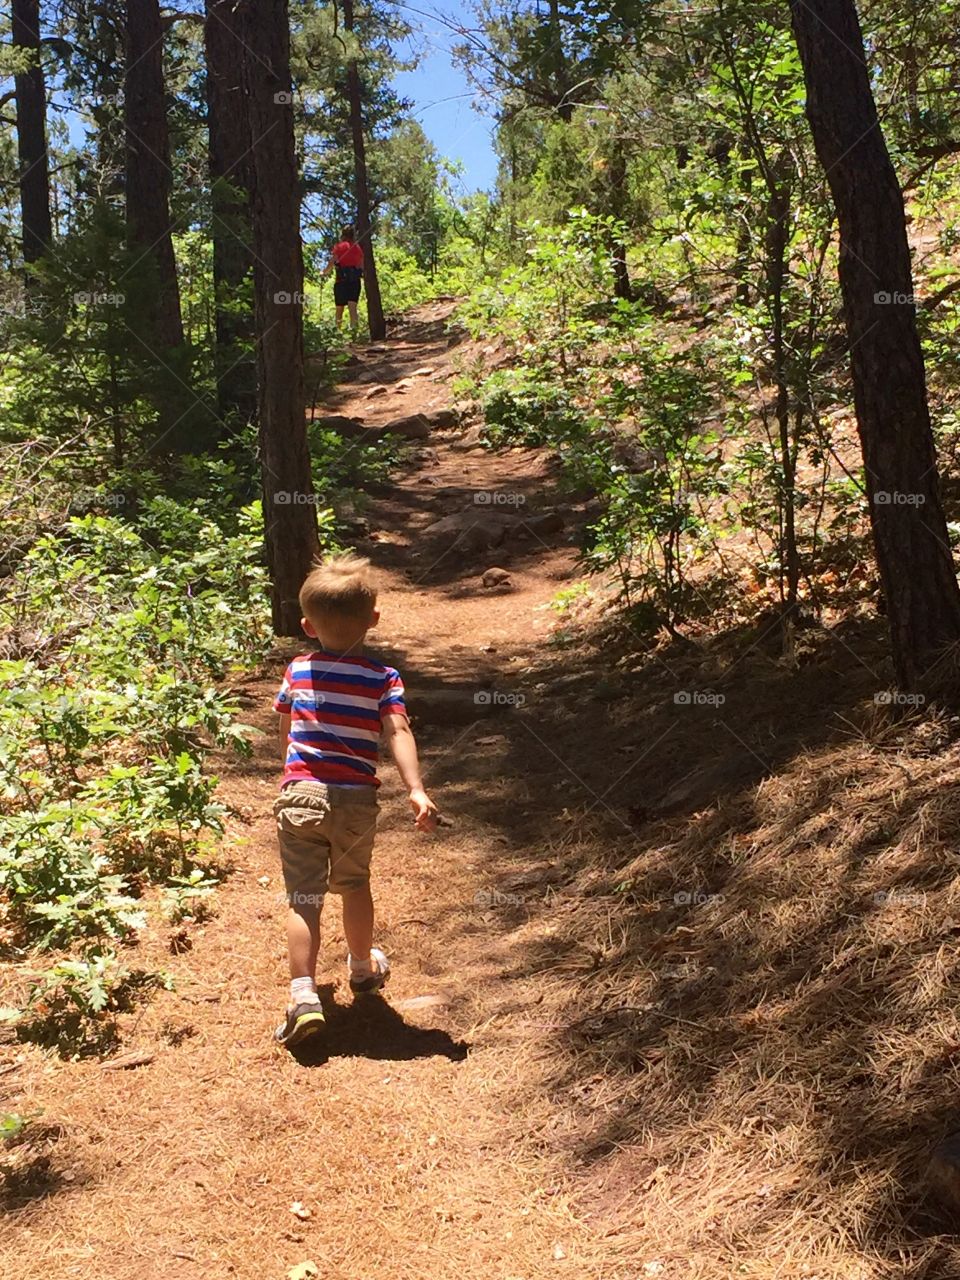 Boy Hiking on a Trail